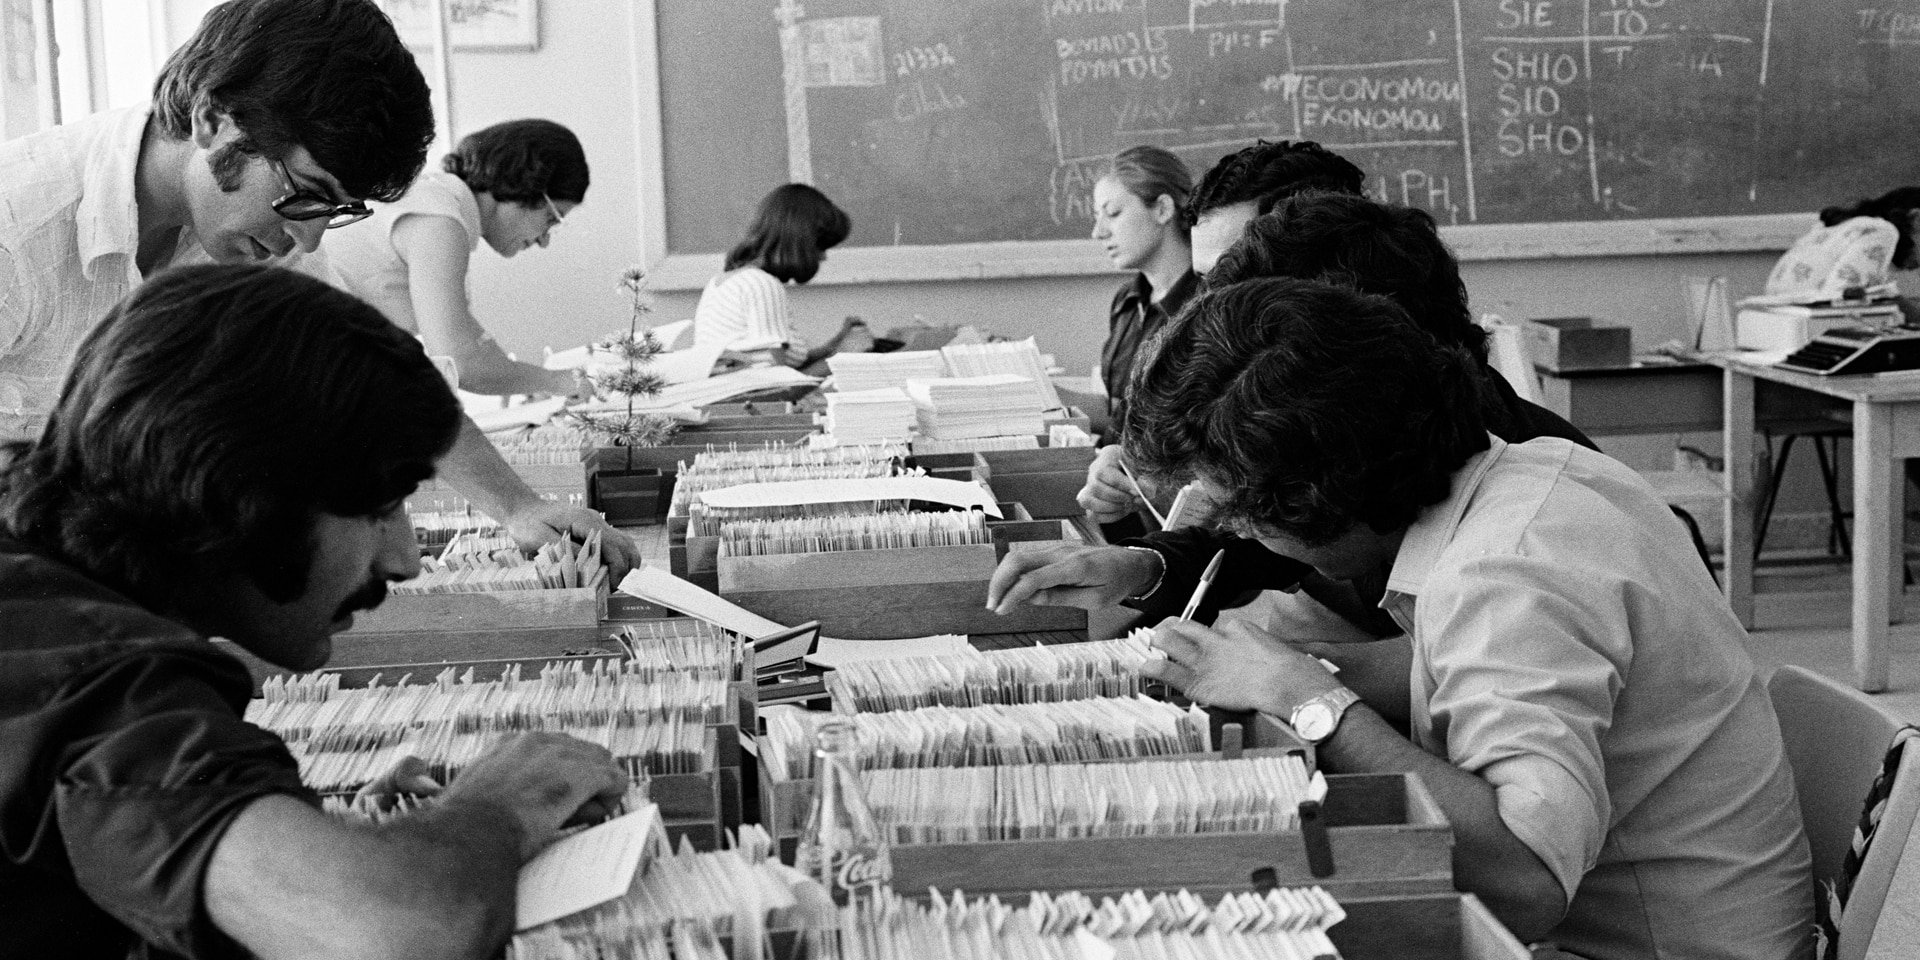 Fotografia in bianco e nero di un ufficio,1974. Otto persone sono intente a lavorare a schedari e schede stipati sui tavoli.  